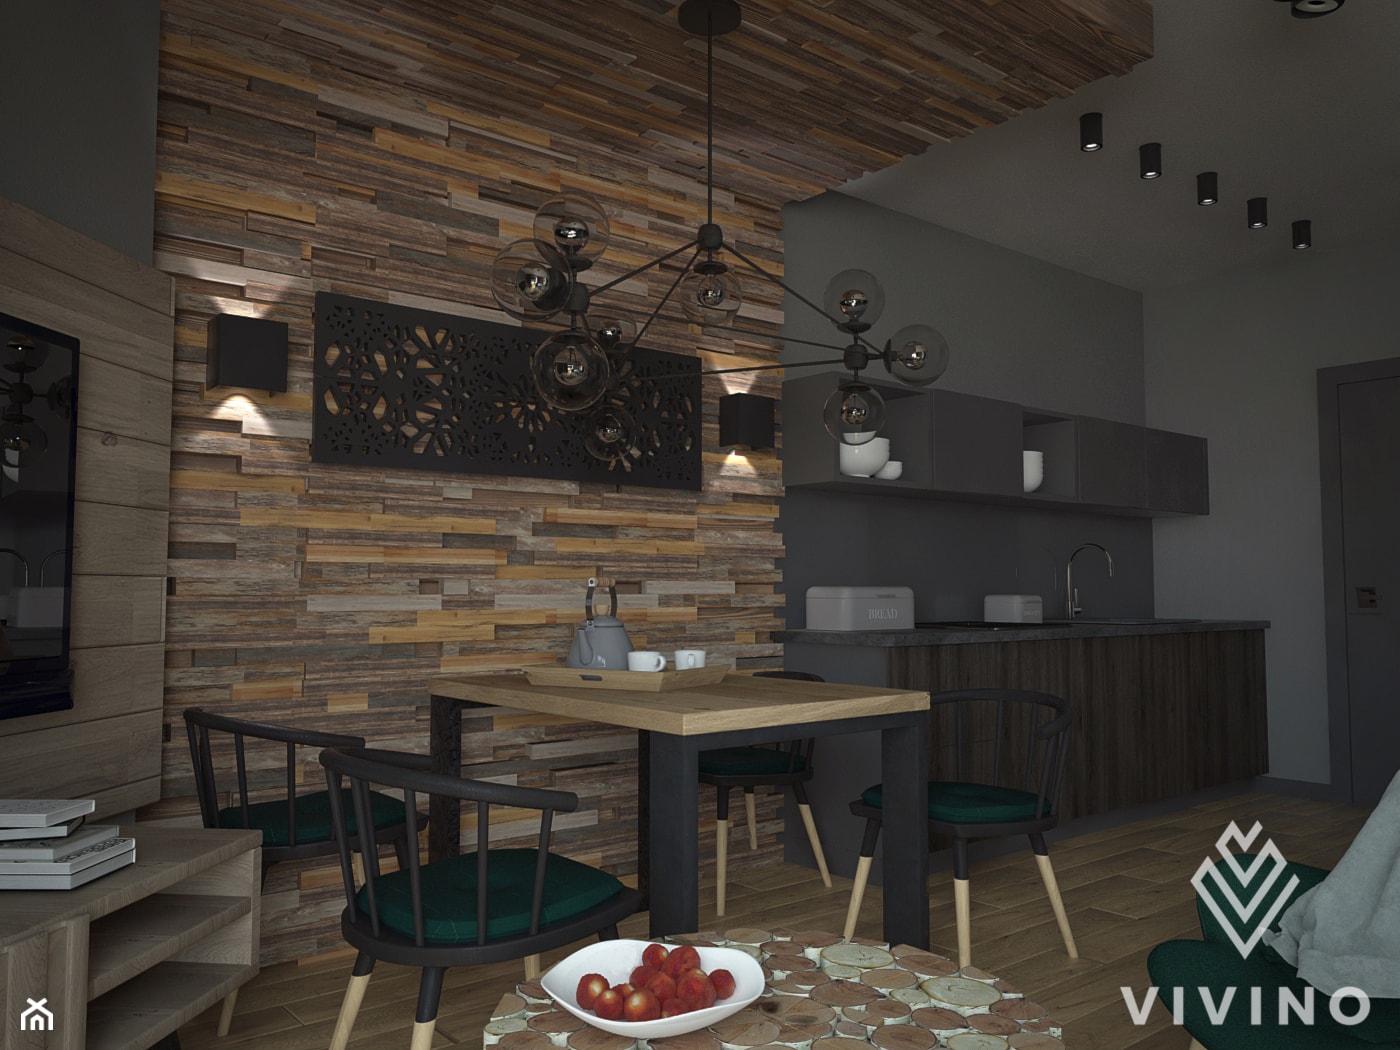 APARTAMENT Z MOCNYM DREWNIANYM AKCENTEM - Średnia szara jadalnia w salonie w kuchni - zdjęcie od VIVINO Studio - Homebook